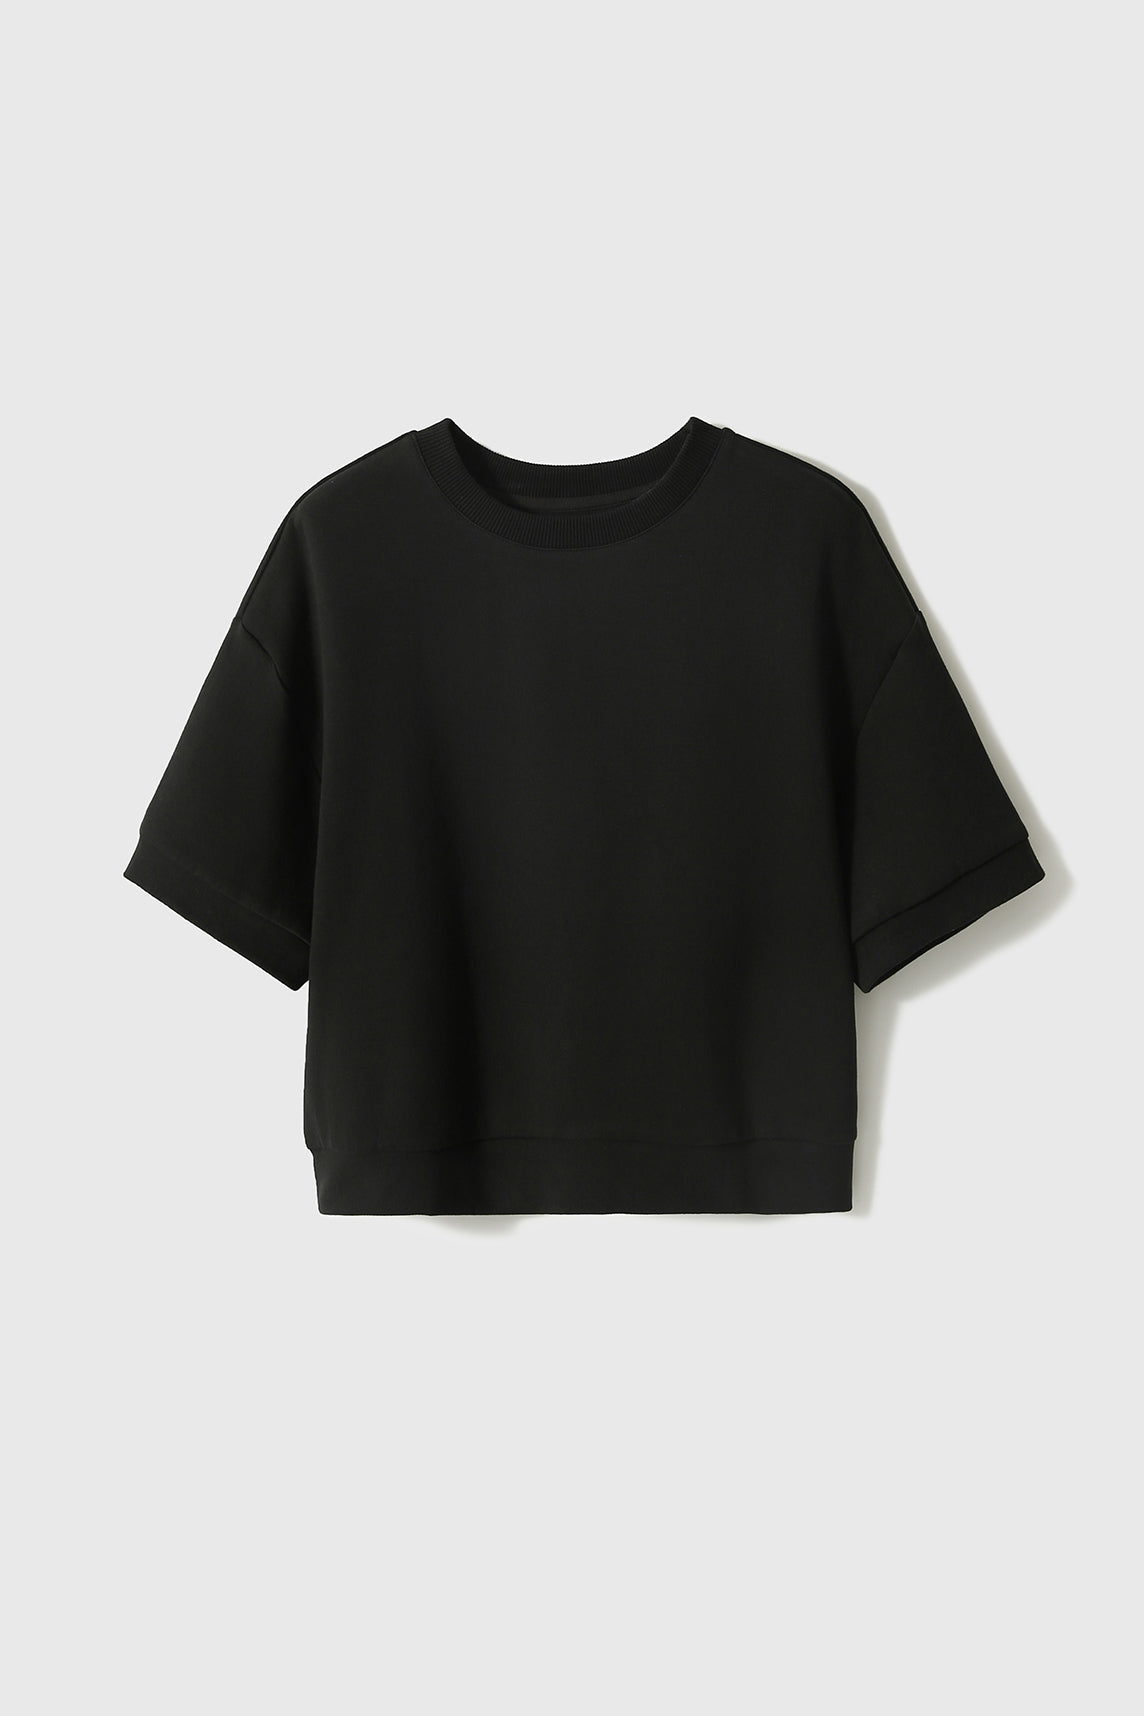 2-piece set, drop shoulder plain sweatshirt + back slit straight long